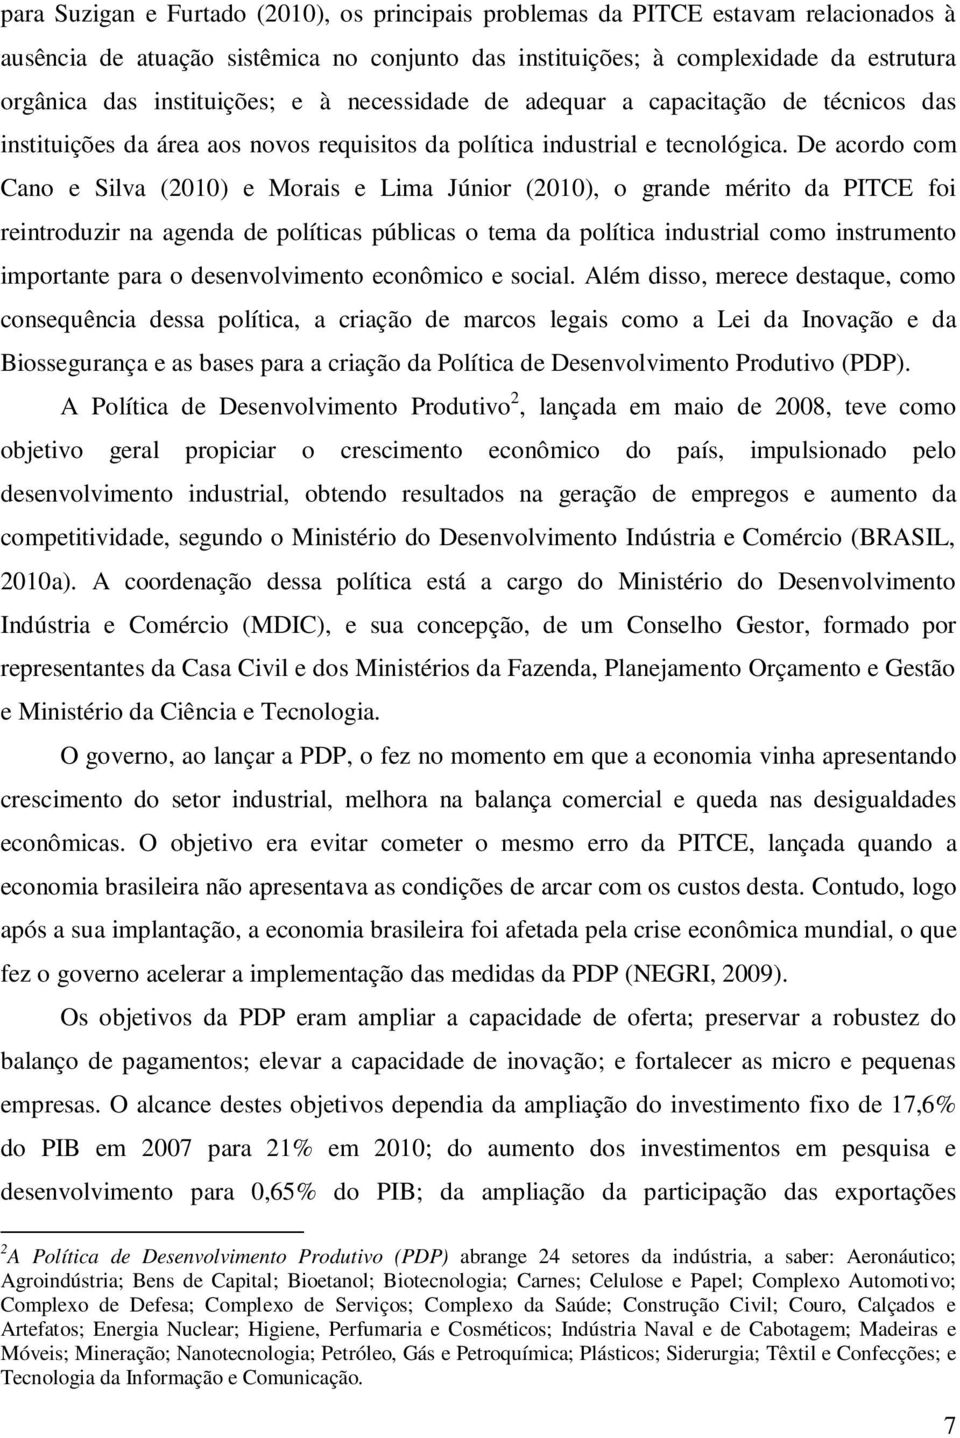 De acordo com Cano e Silva (2010) e Morais e Lima Júnior (2010), o grande mério da PITCE foi reinroduzir na agenda de políicas públicas o ema da políica indusrial como insrumeno imporane para o